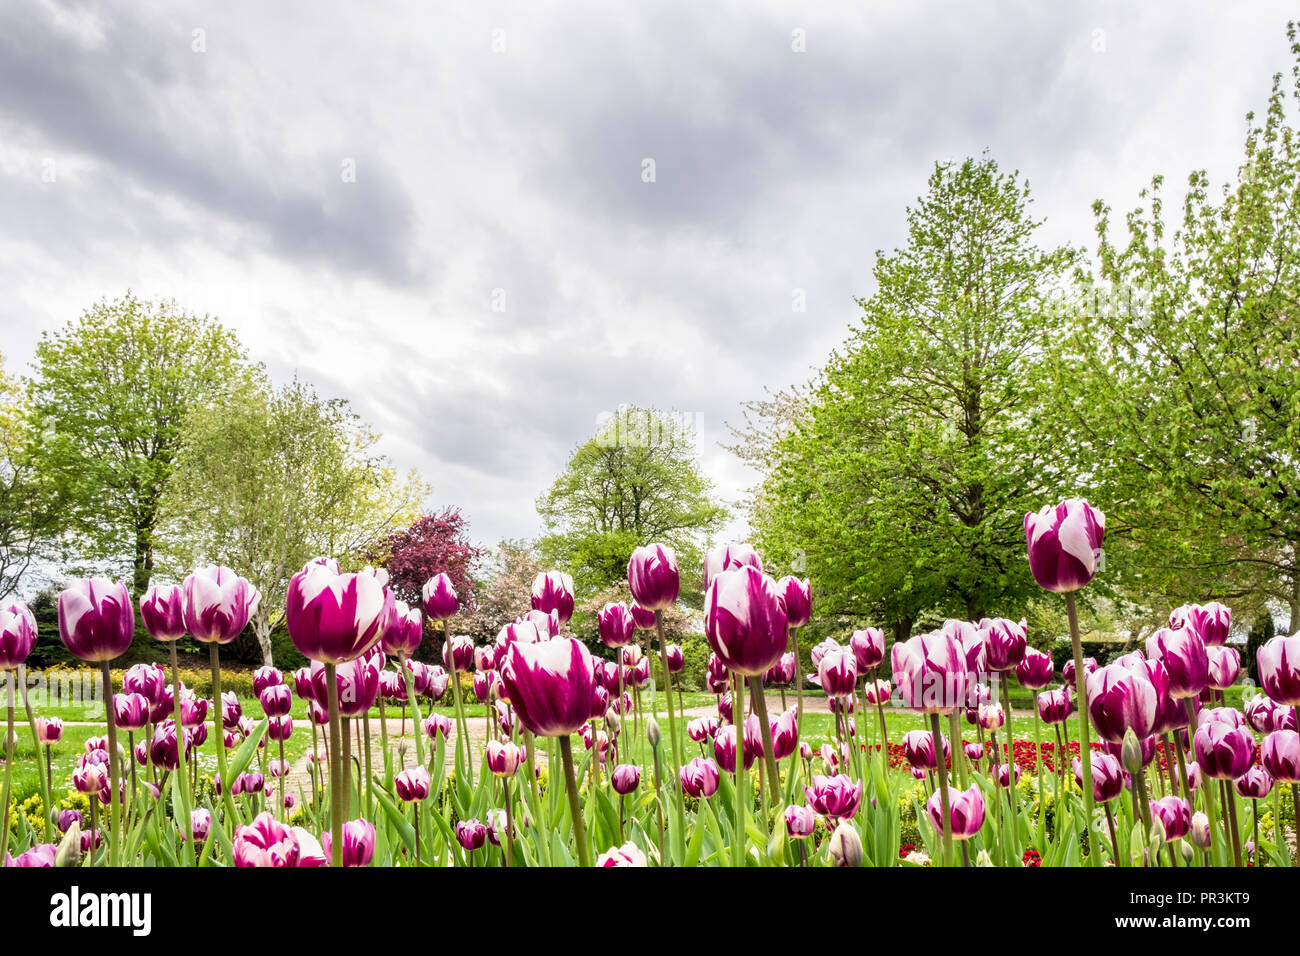 Ein blumenbeet von lila und weißen Tulpen in einem Park bringen Farbe in einen grauen Himmel Tag, Nottingham, England, Großbritannien Stockfoto